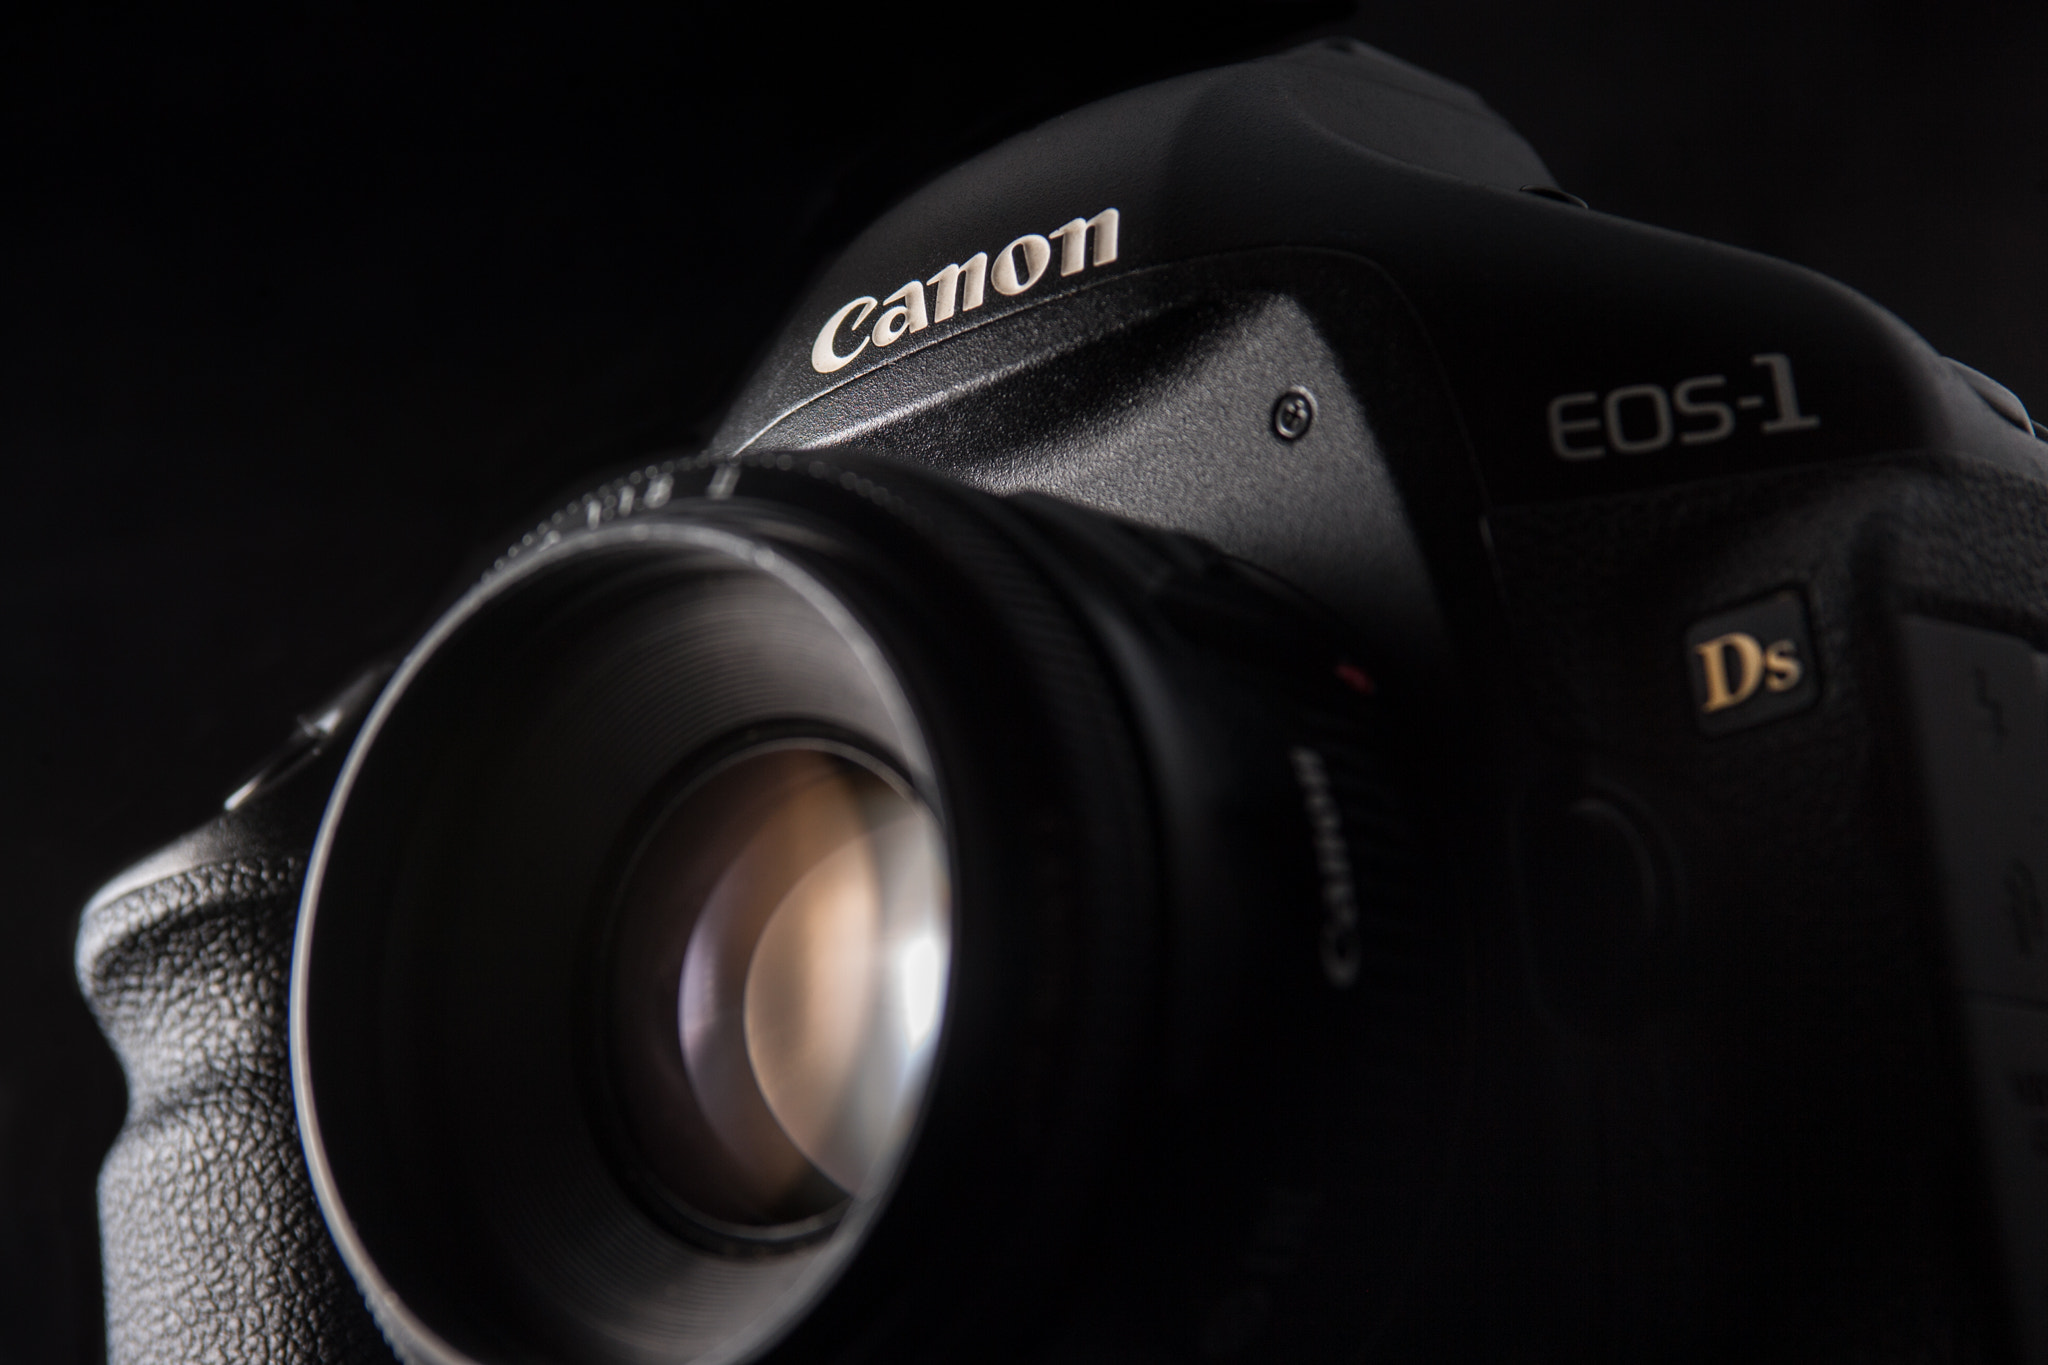 Canon EOS-1D Mark III sample photo. Canon eos 1ds photography